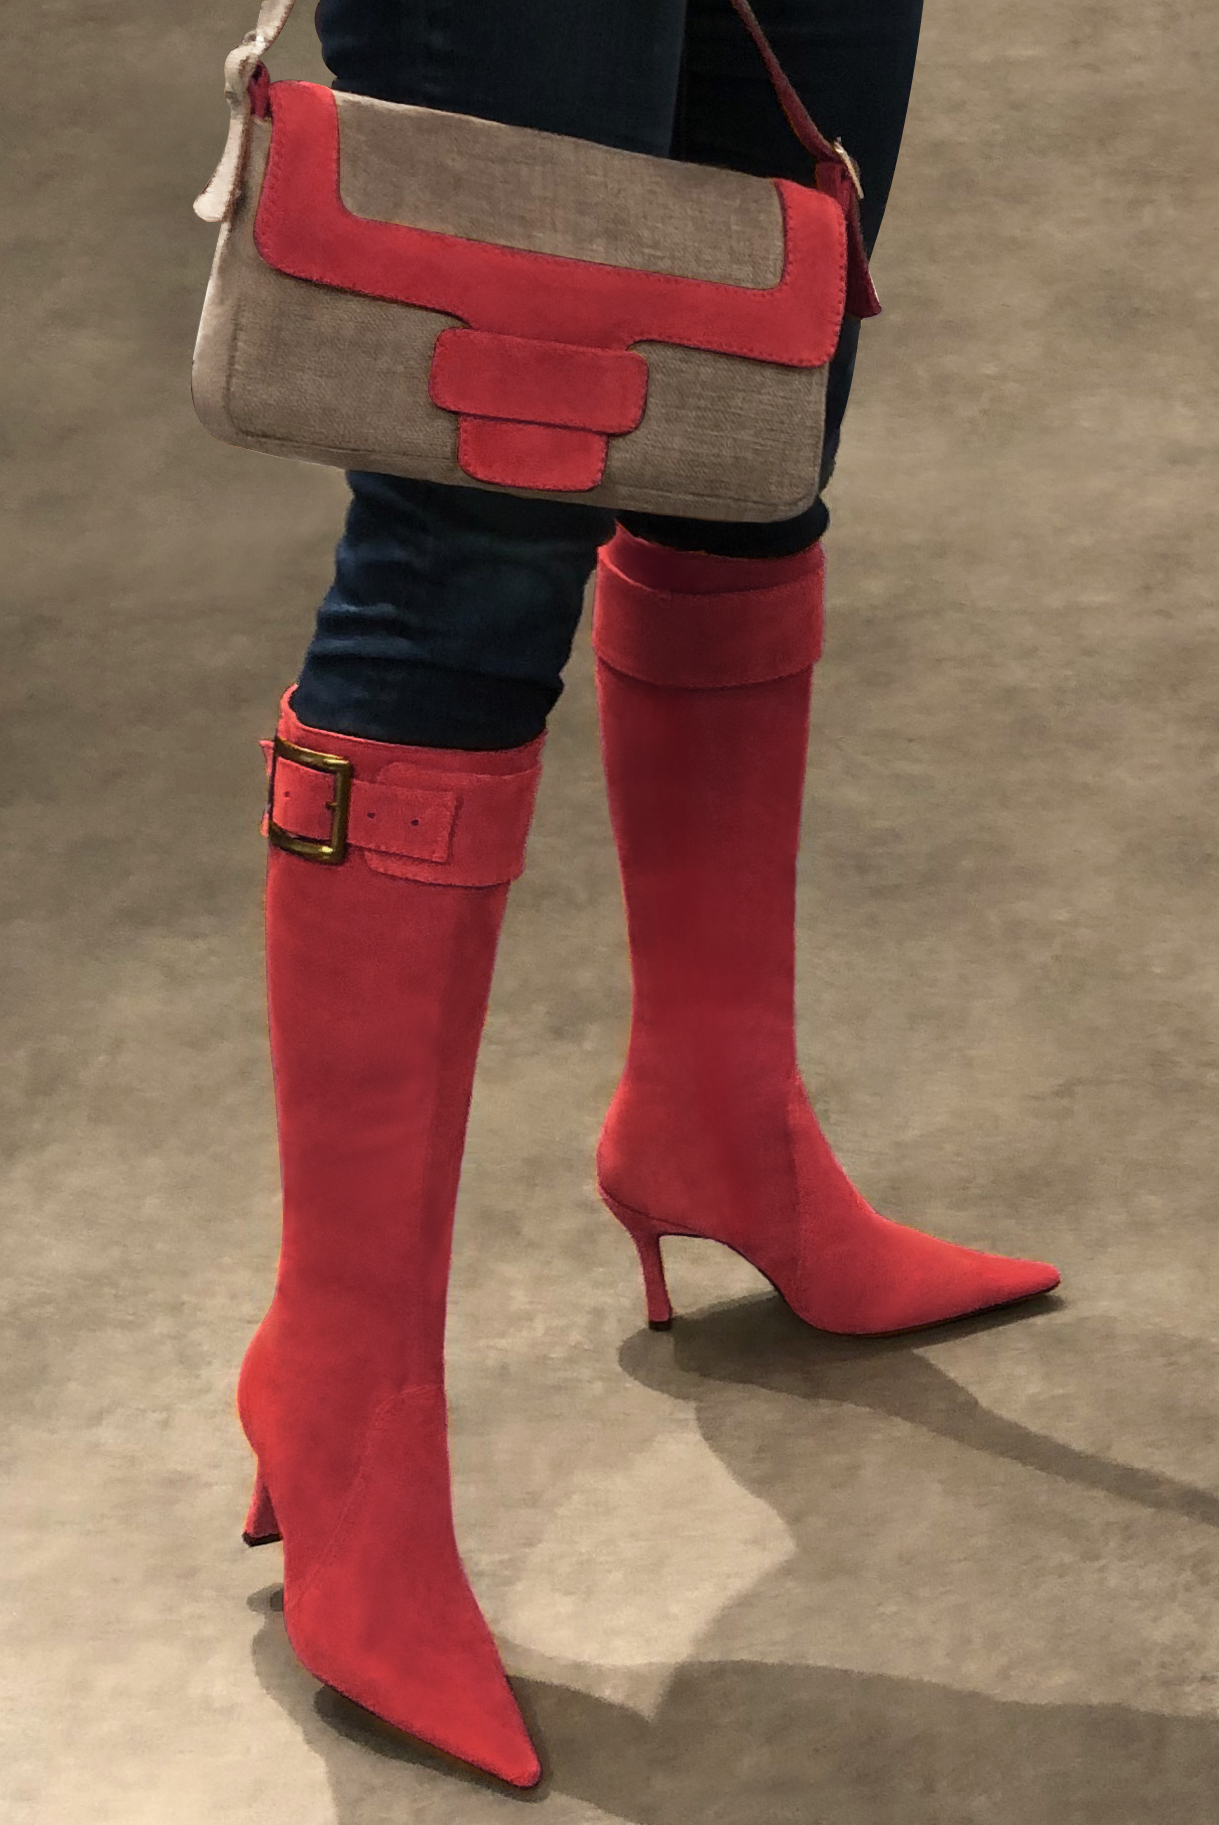 Tan beige and scarlet red women's dress handbag, matching pumps and belts. Worn view - Florence KOOIJMAN